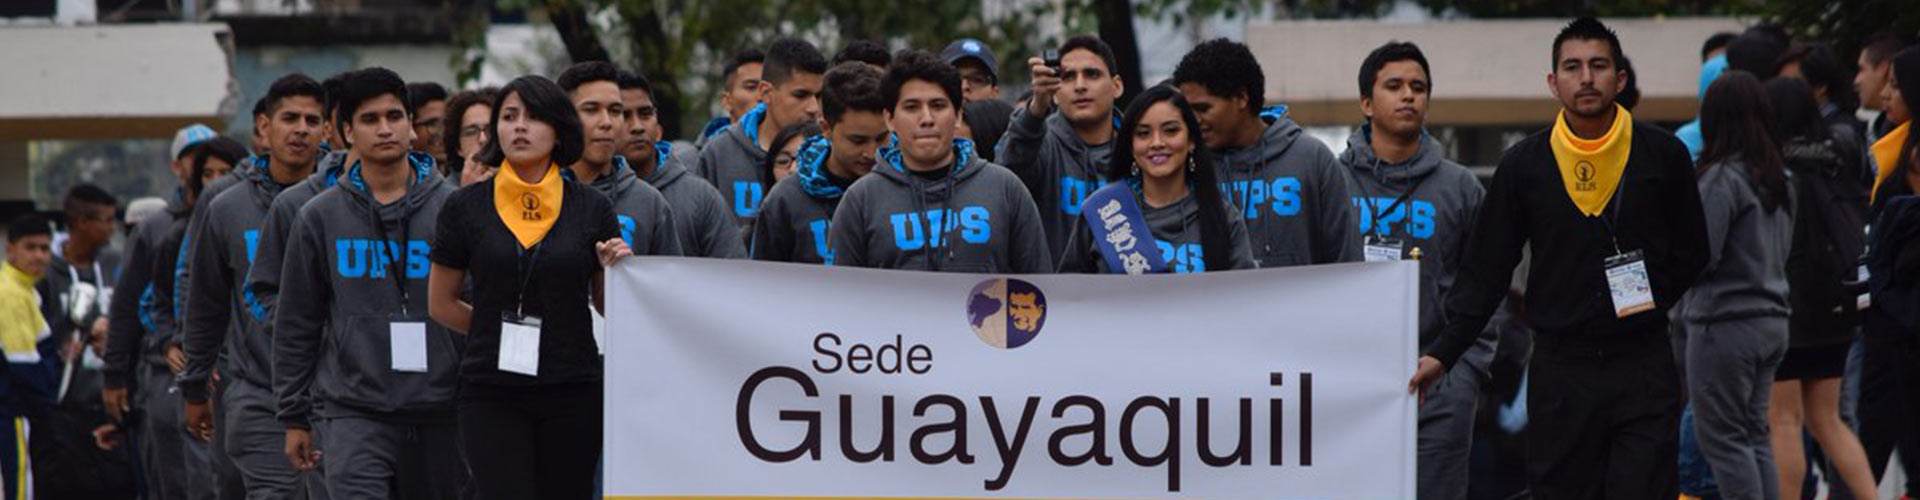 Integrantes de la Federación de Estudiantes de la Universidad Politécnica Salesiana Sede Guayaquil